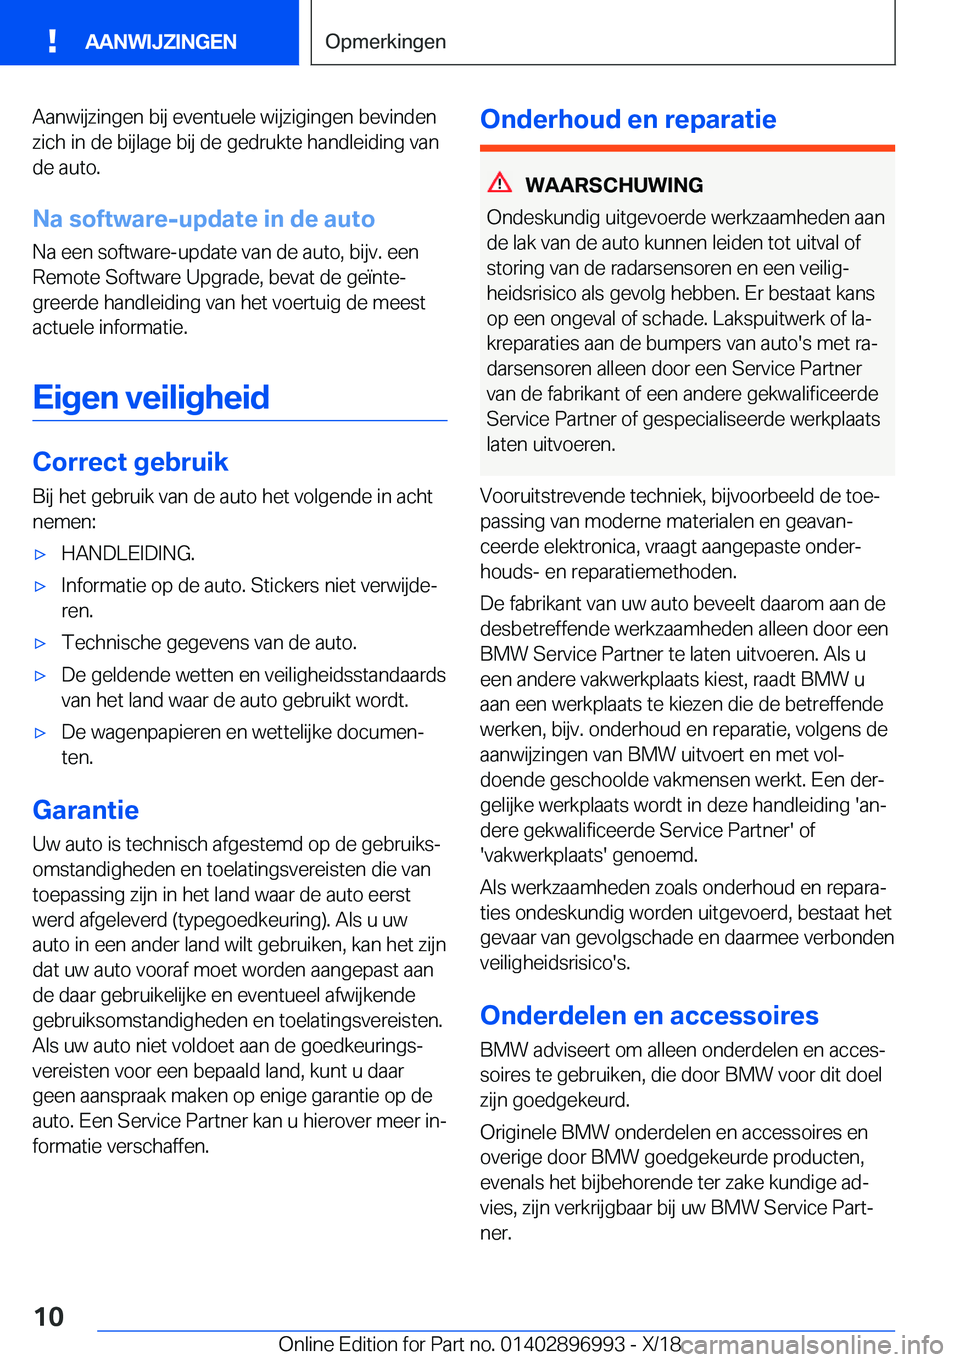 BMW Z4 2019  Instructieboekjes (in Dutch) �A�a�n�w�i�j�z�i�n�g�e�n��b�i�j��e�v�e�n�t�u�e�l�e��w�i�j�z�i�g�i�n�g�e�n��b�e�v�i�n�d�e�n�z�i�c�h��i�n��d�e��b�i�j�l�a�g�e��b�i�j��d�e��g�e�d�r�u�k�t�e��h�a�n�d�l�e�i�d�i�n�g��v�a�n
�d�e�